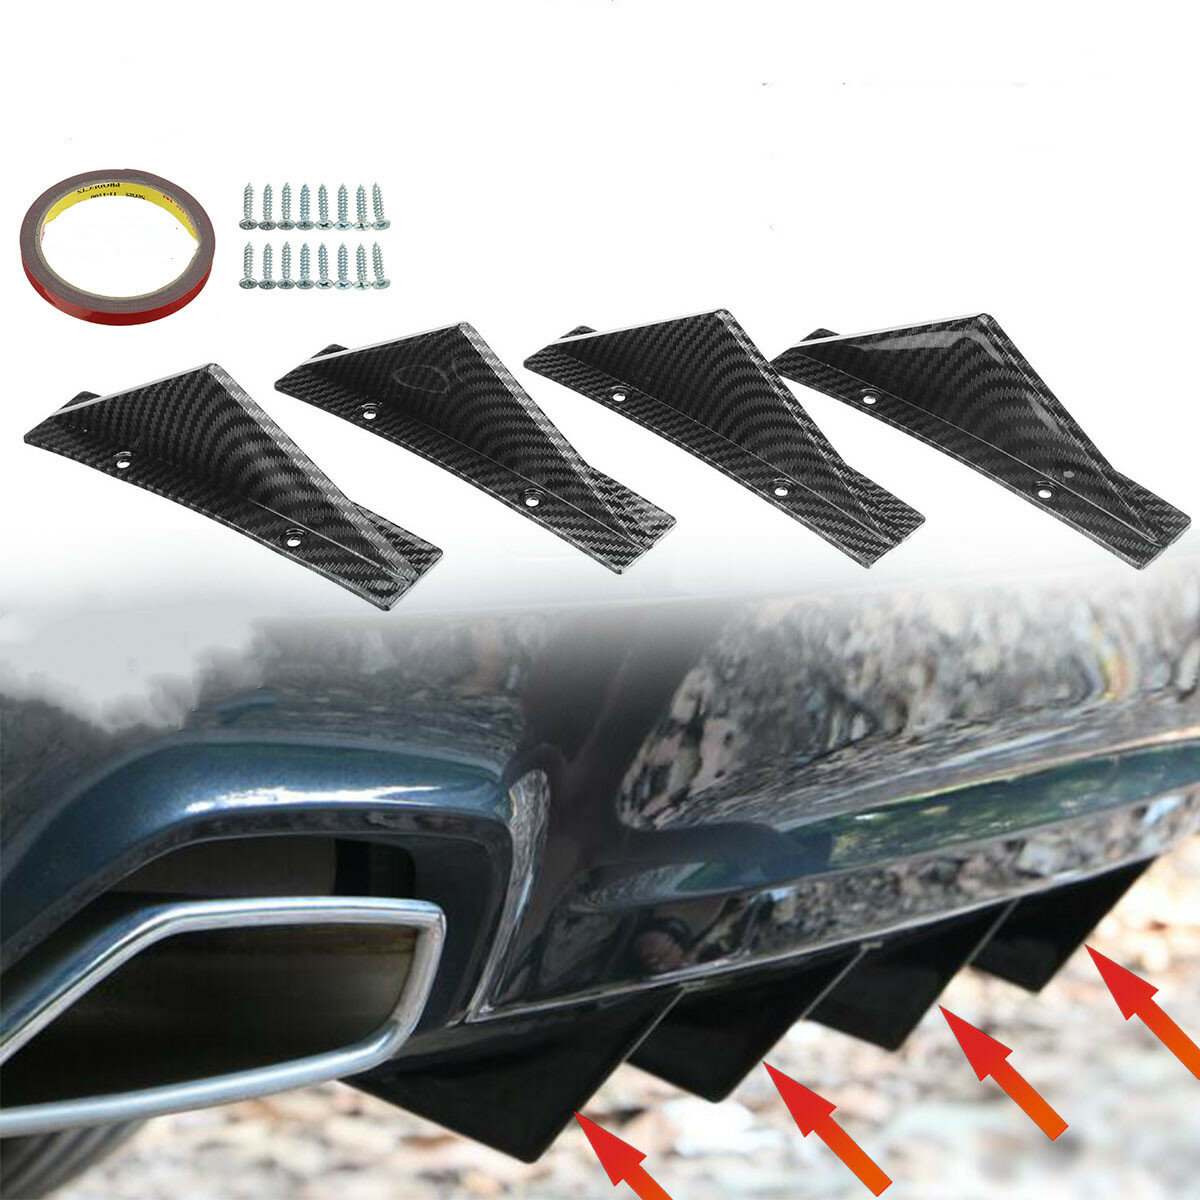 4PCS Car Universal Carbon Fiber Look Rear Bumper Lip Diffuser Shark Fins Trim Spoiler